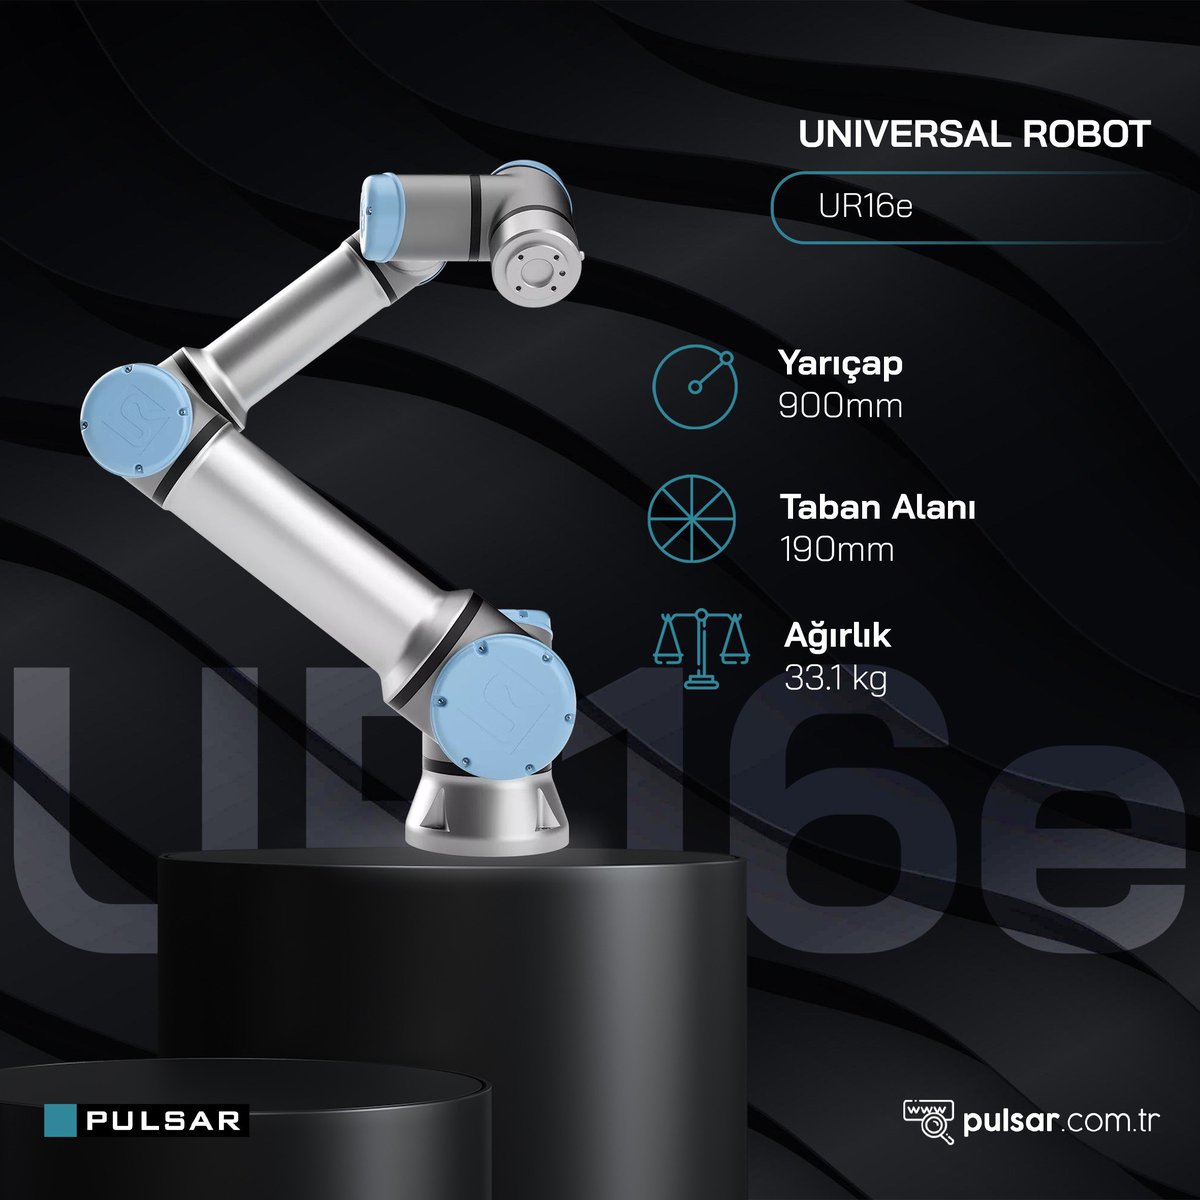 Universal Robots e-Serisi, sektör ve firmanızın büyüklüğü ya da ürününüzün özelliği her ne olursa olsun üretim sürecinizi tamamlar.

#pulsarrobotik #universalrobots #cobot #kolaboratifrobot #ur16e